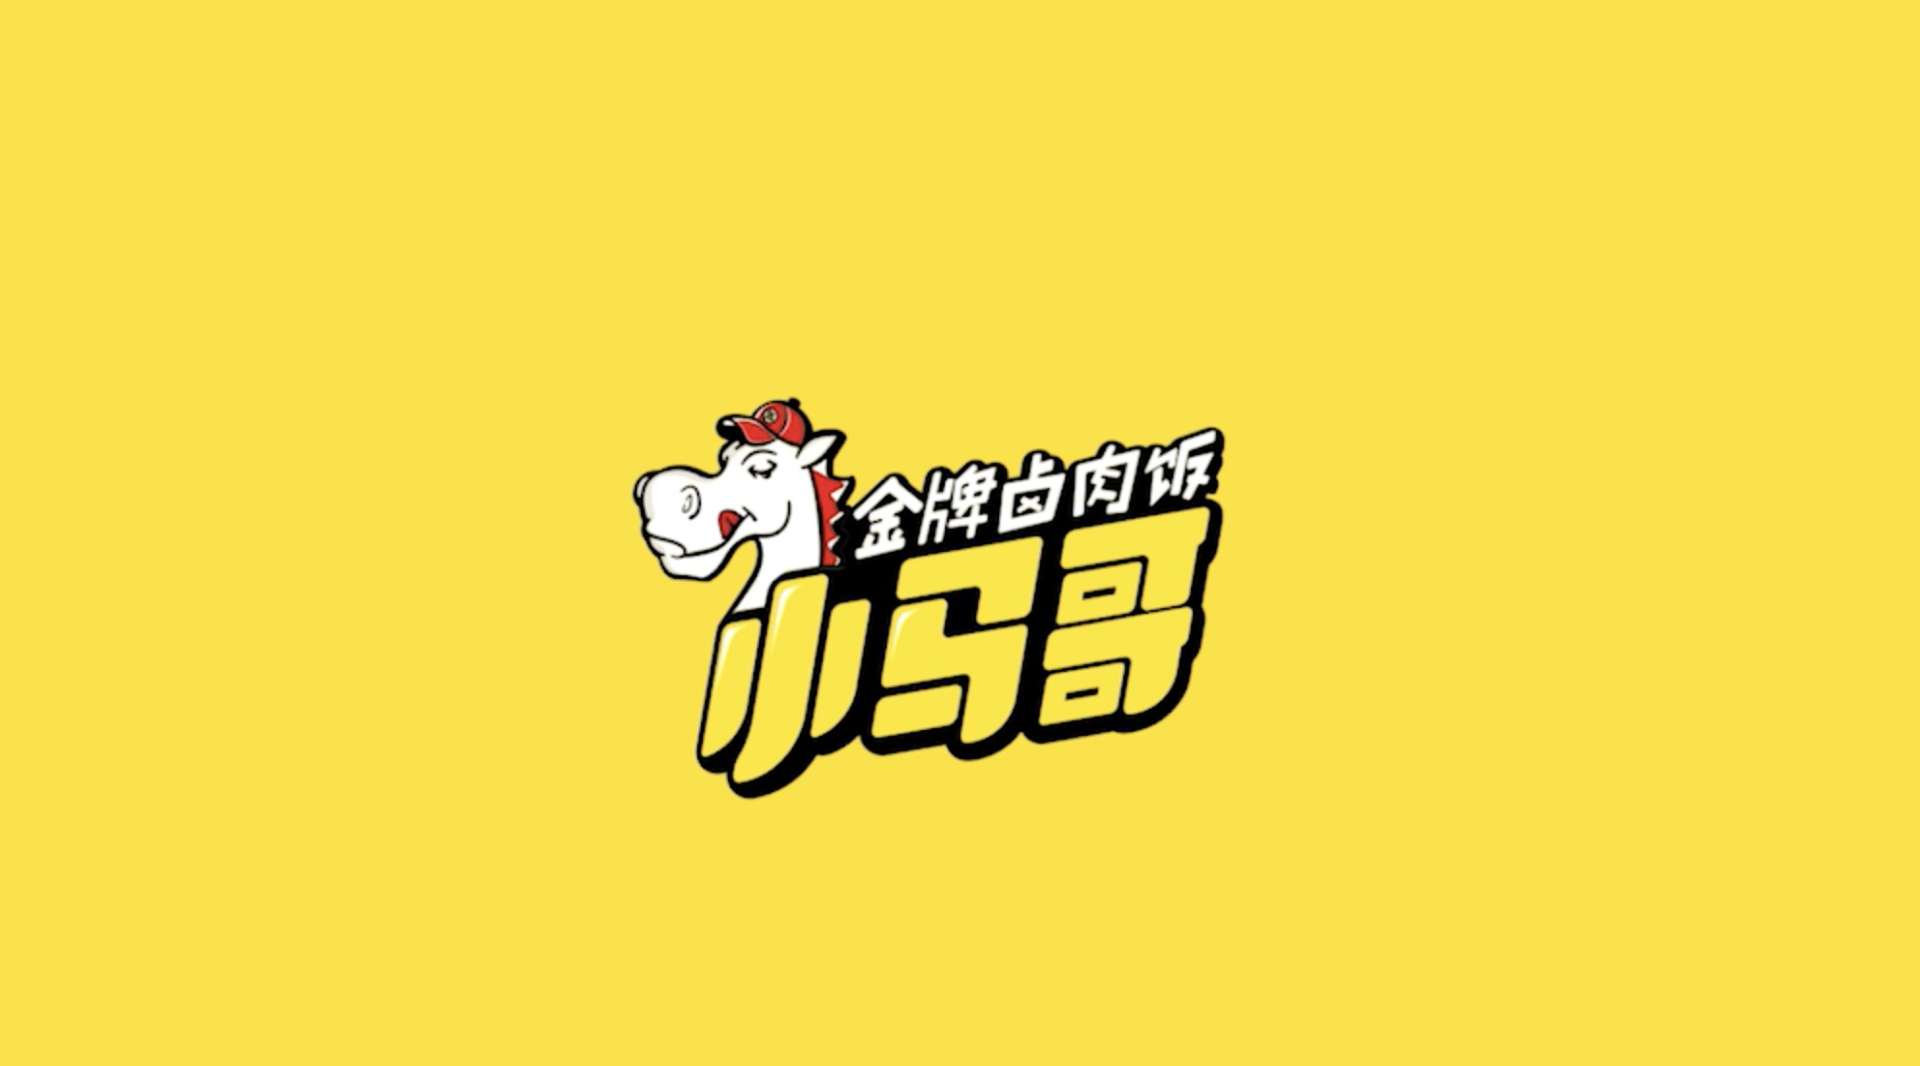 饿了么筷马热食线下体验店 TVC-小马哥卤肉饭篇